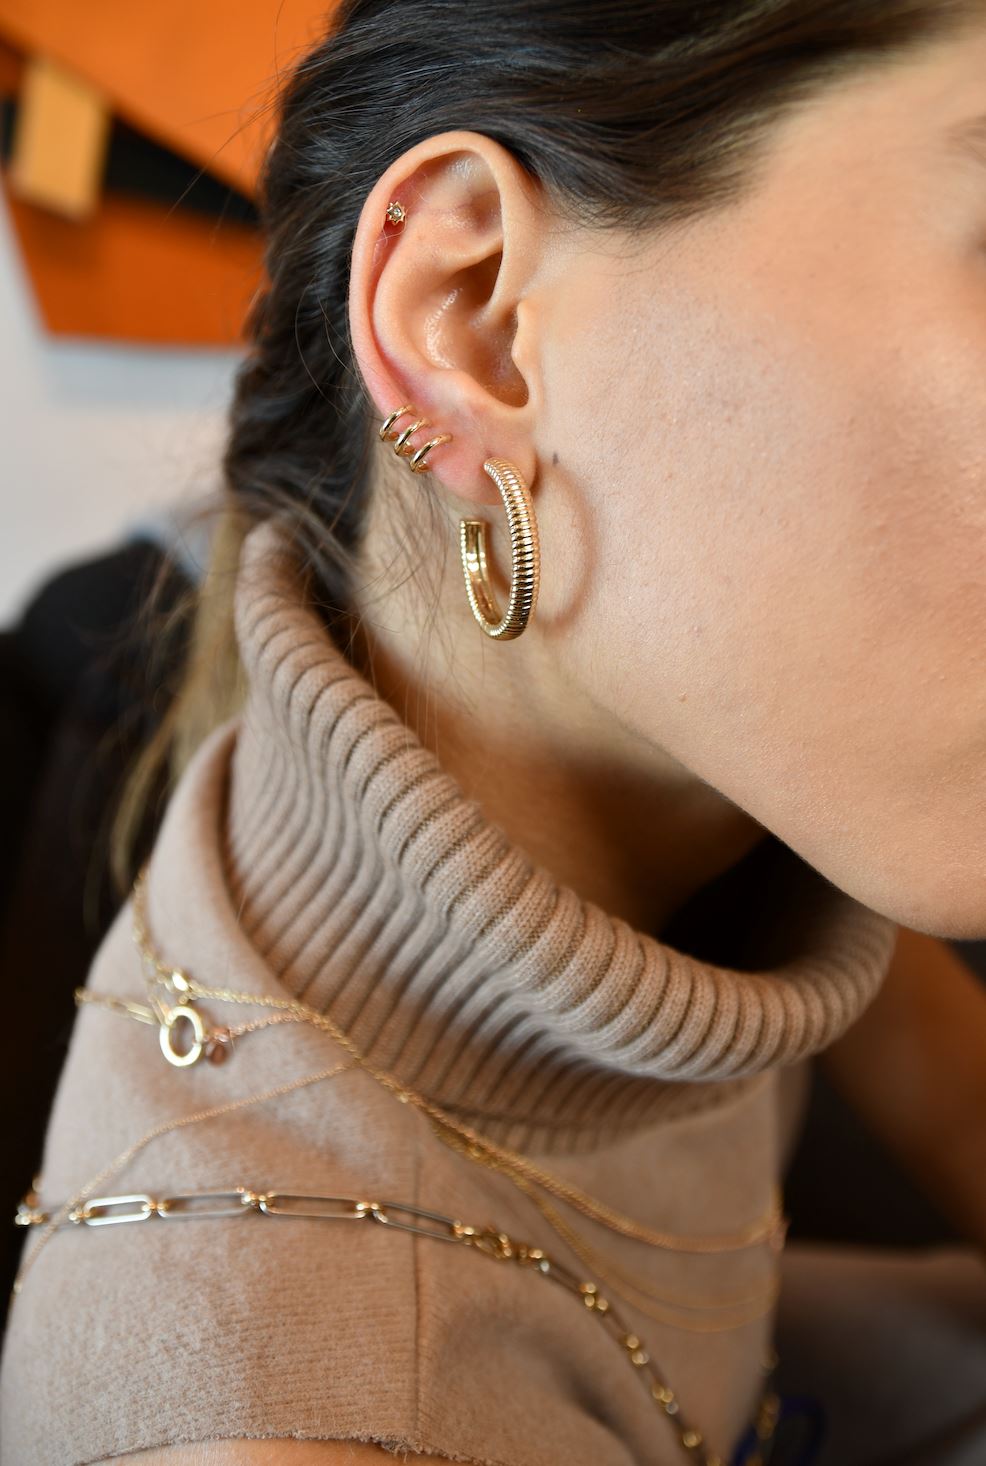 Three Hoop Earring Earrings - BONDEYE JEWELRY ®